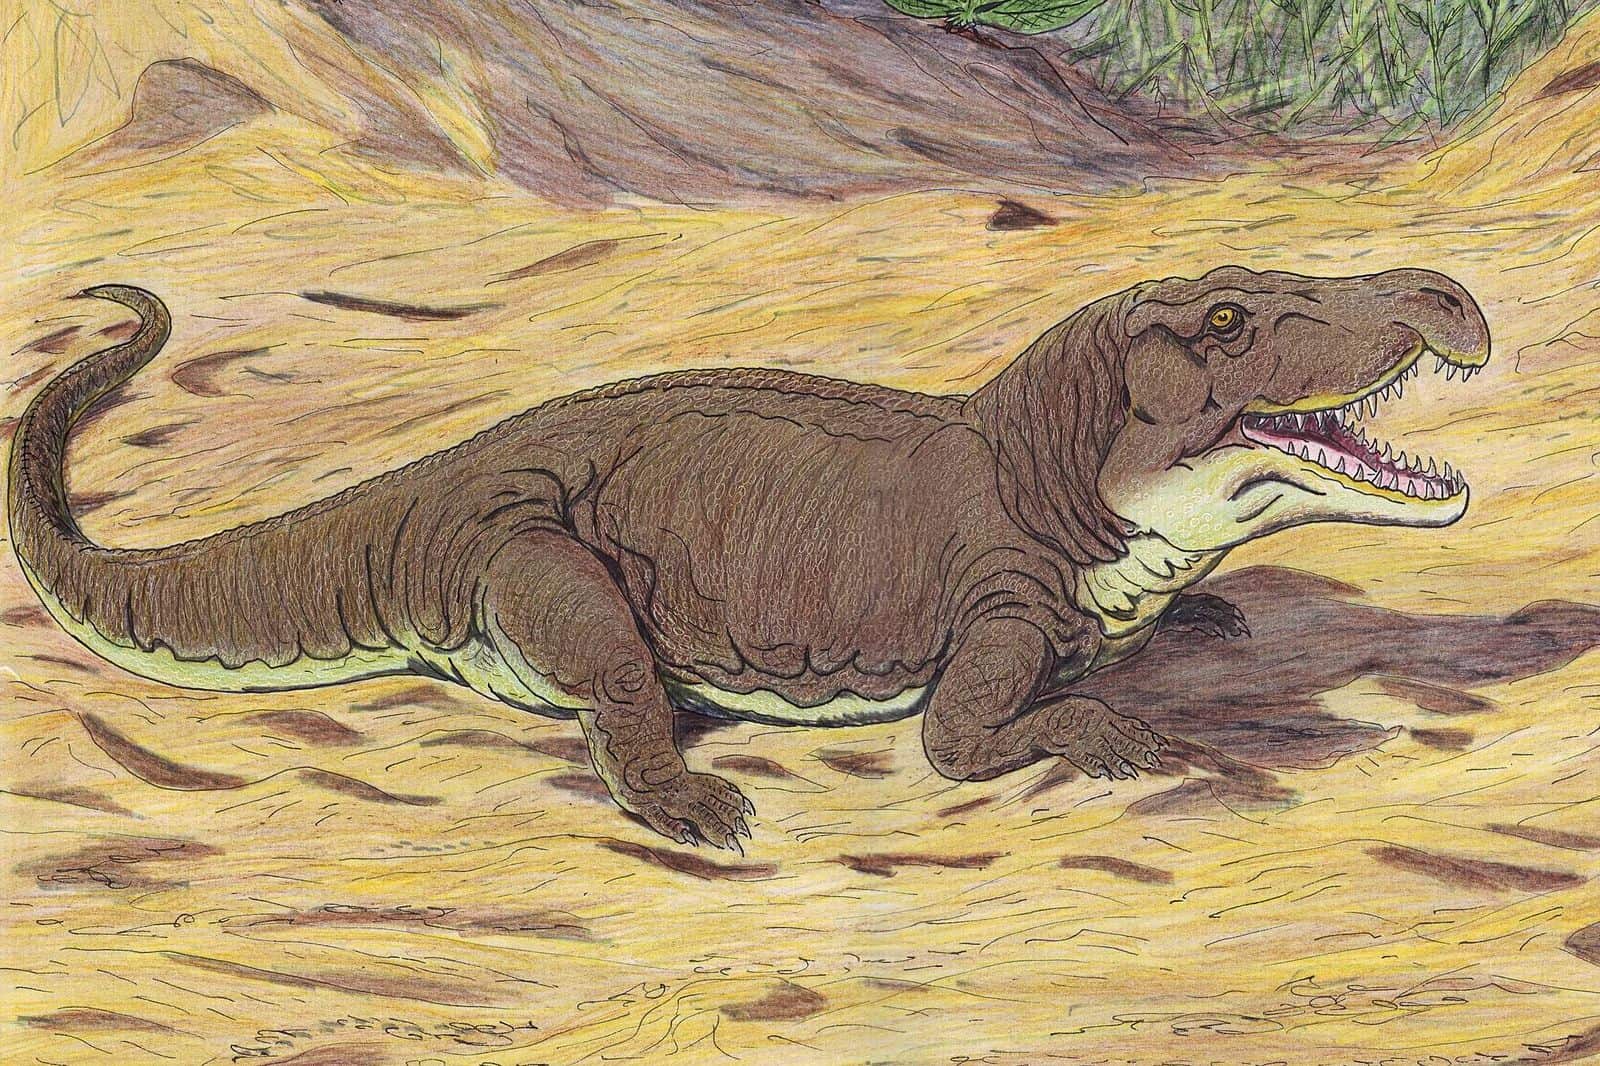 GarajiniaDB - Mass extinction saw an invasion of giant-headed Komodo Dragon-like Triassic predators